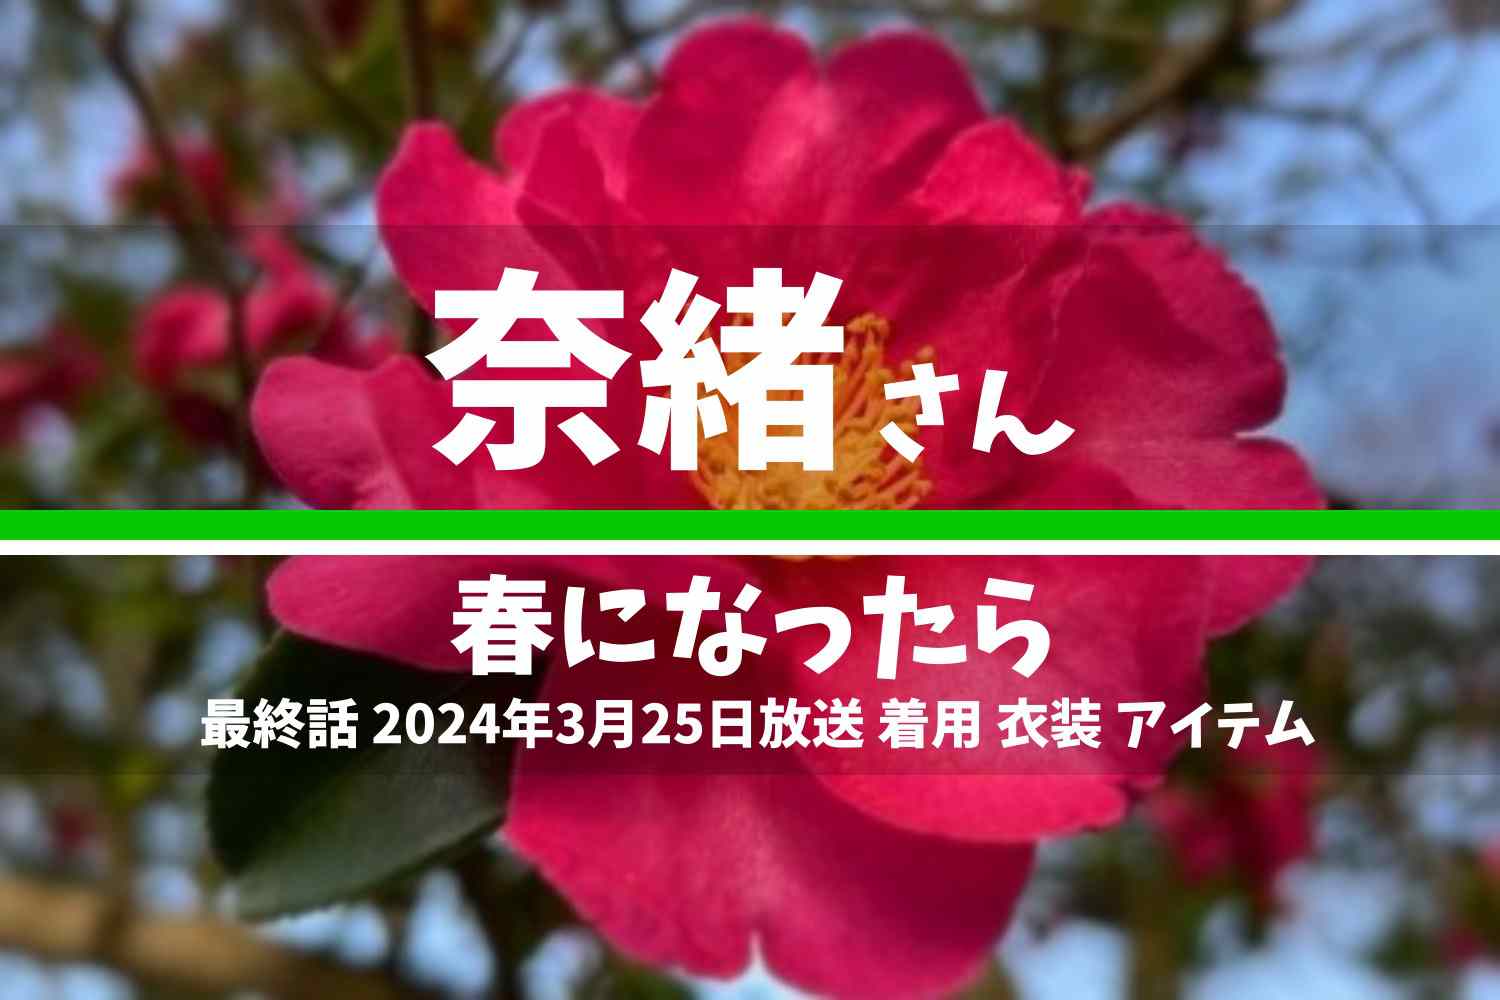 春になったら 奈緒さん テレビドラマ 衣装 2024年3月25日放送